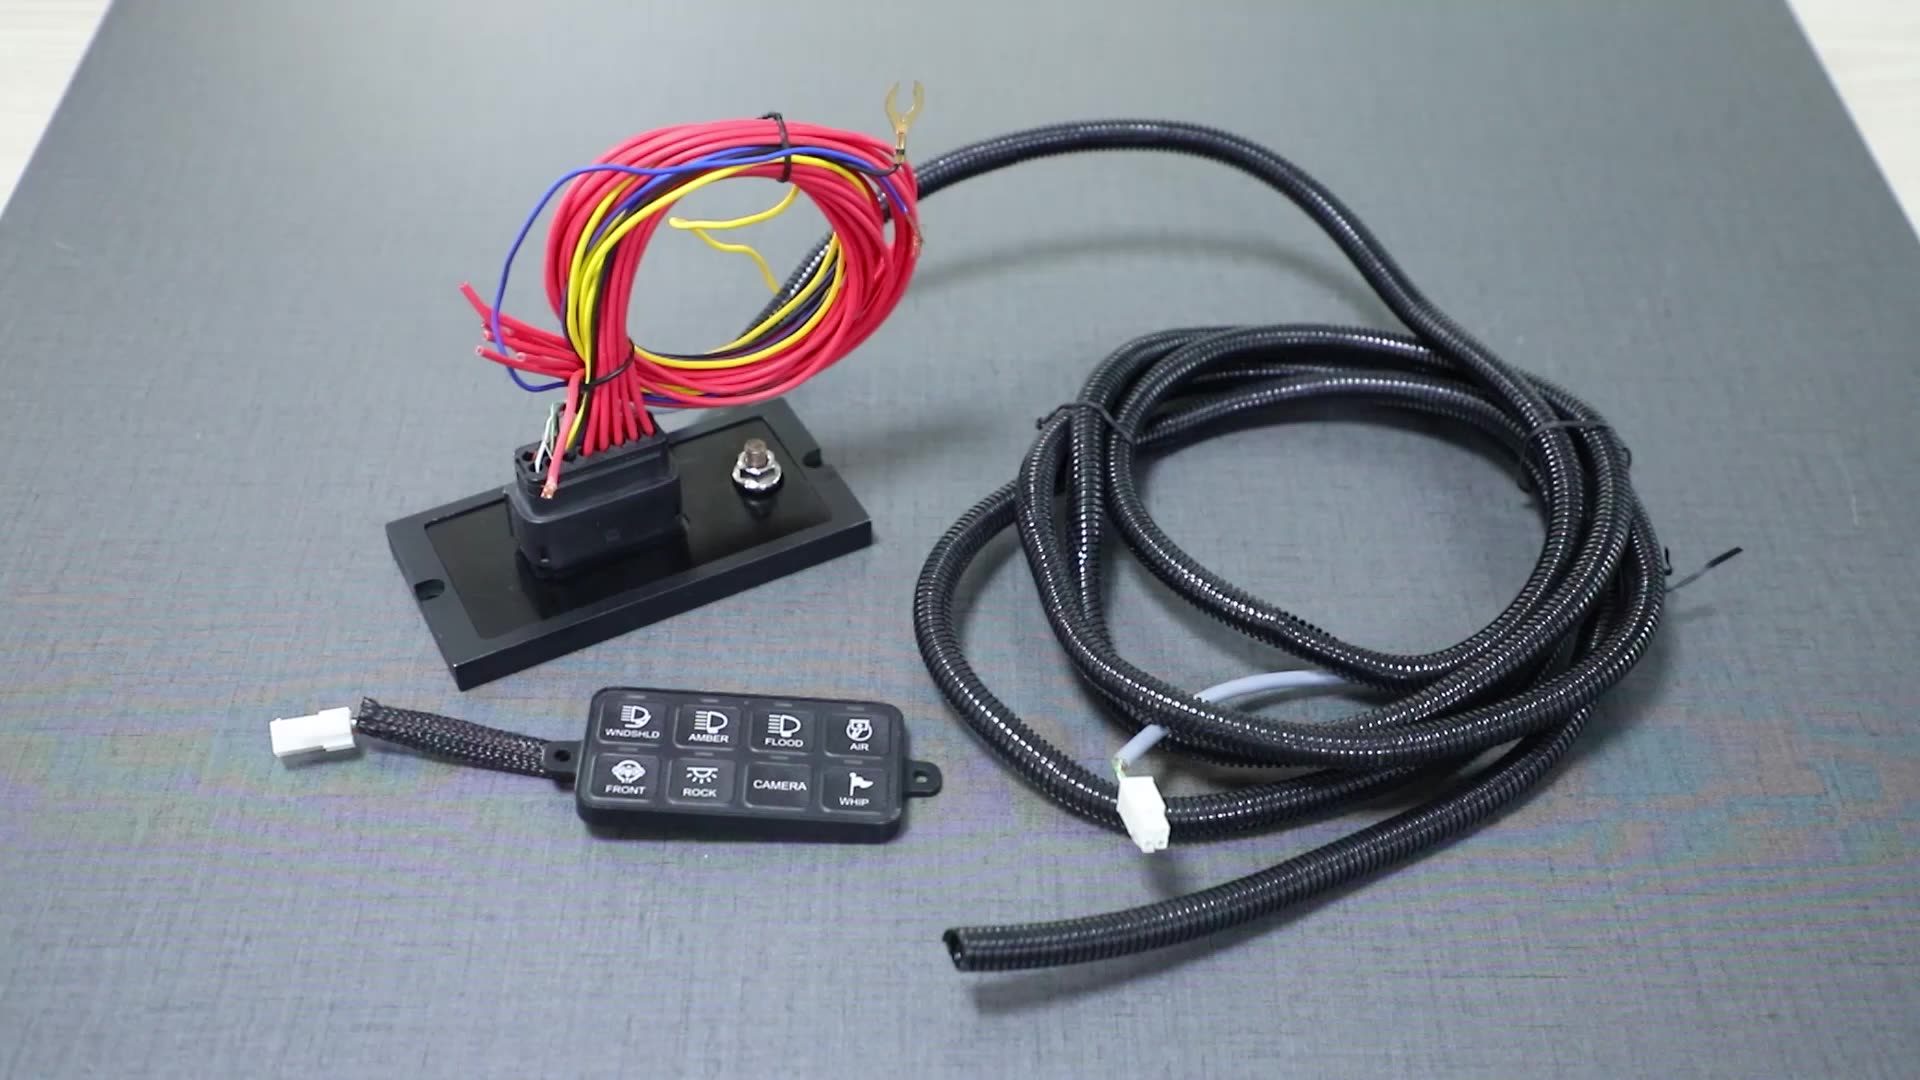 8 Ελεγκτής πίνακα διακόπτη συμμορίας με εφαρμογές προ-ενσύρματο μπλε-δόντι κυκλώματος Cir Circon Cound Control Switch Switch Waterproof Fuse Relay Box1